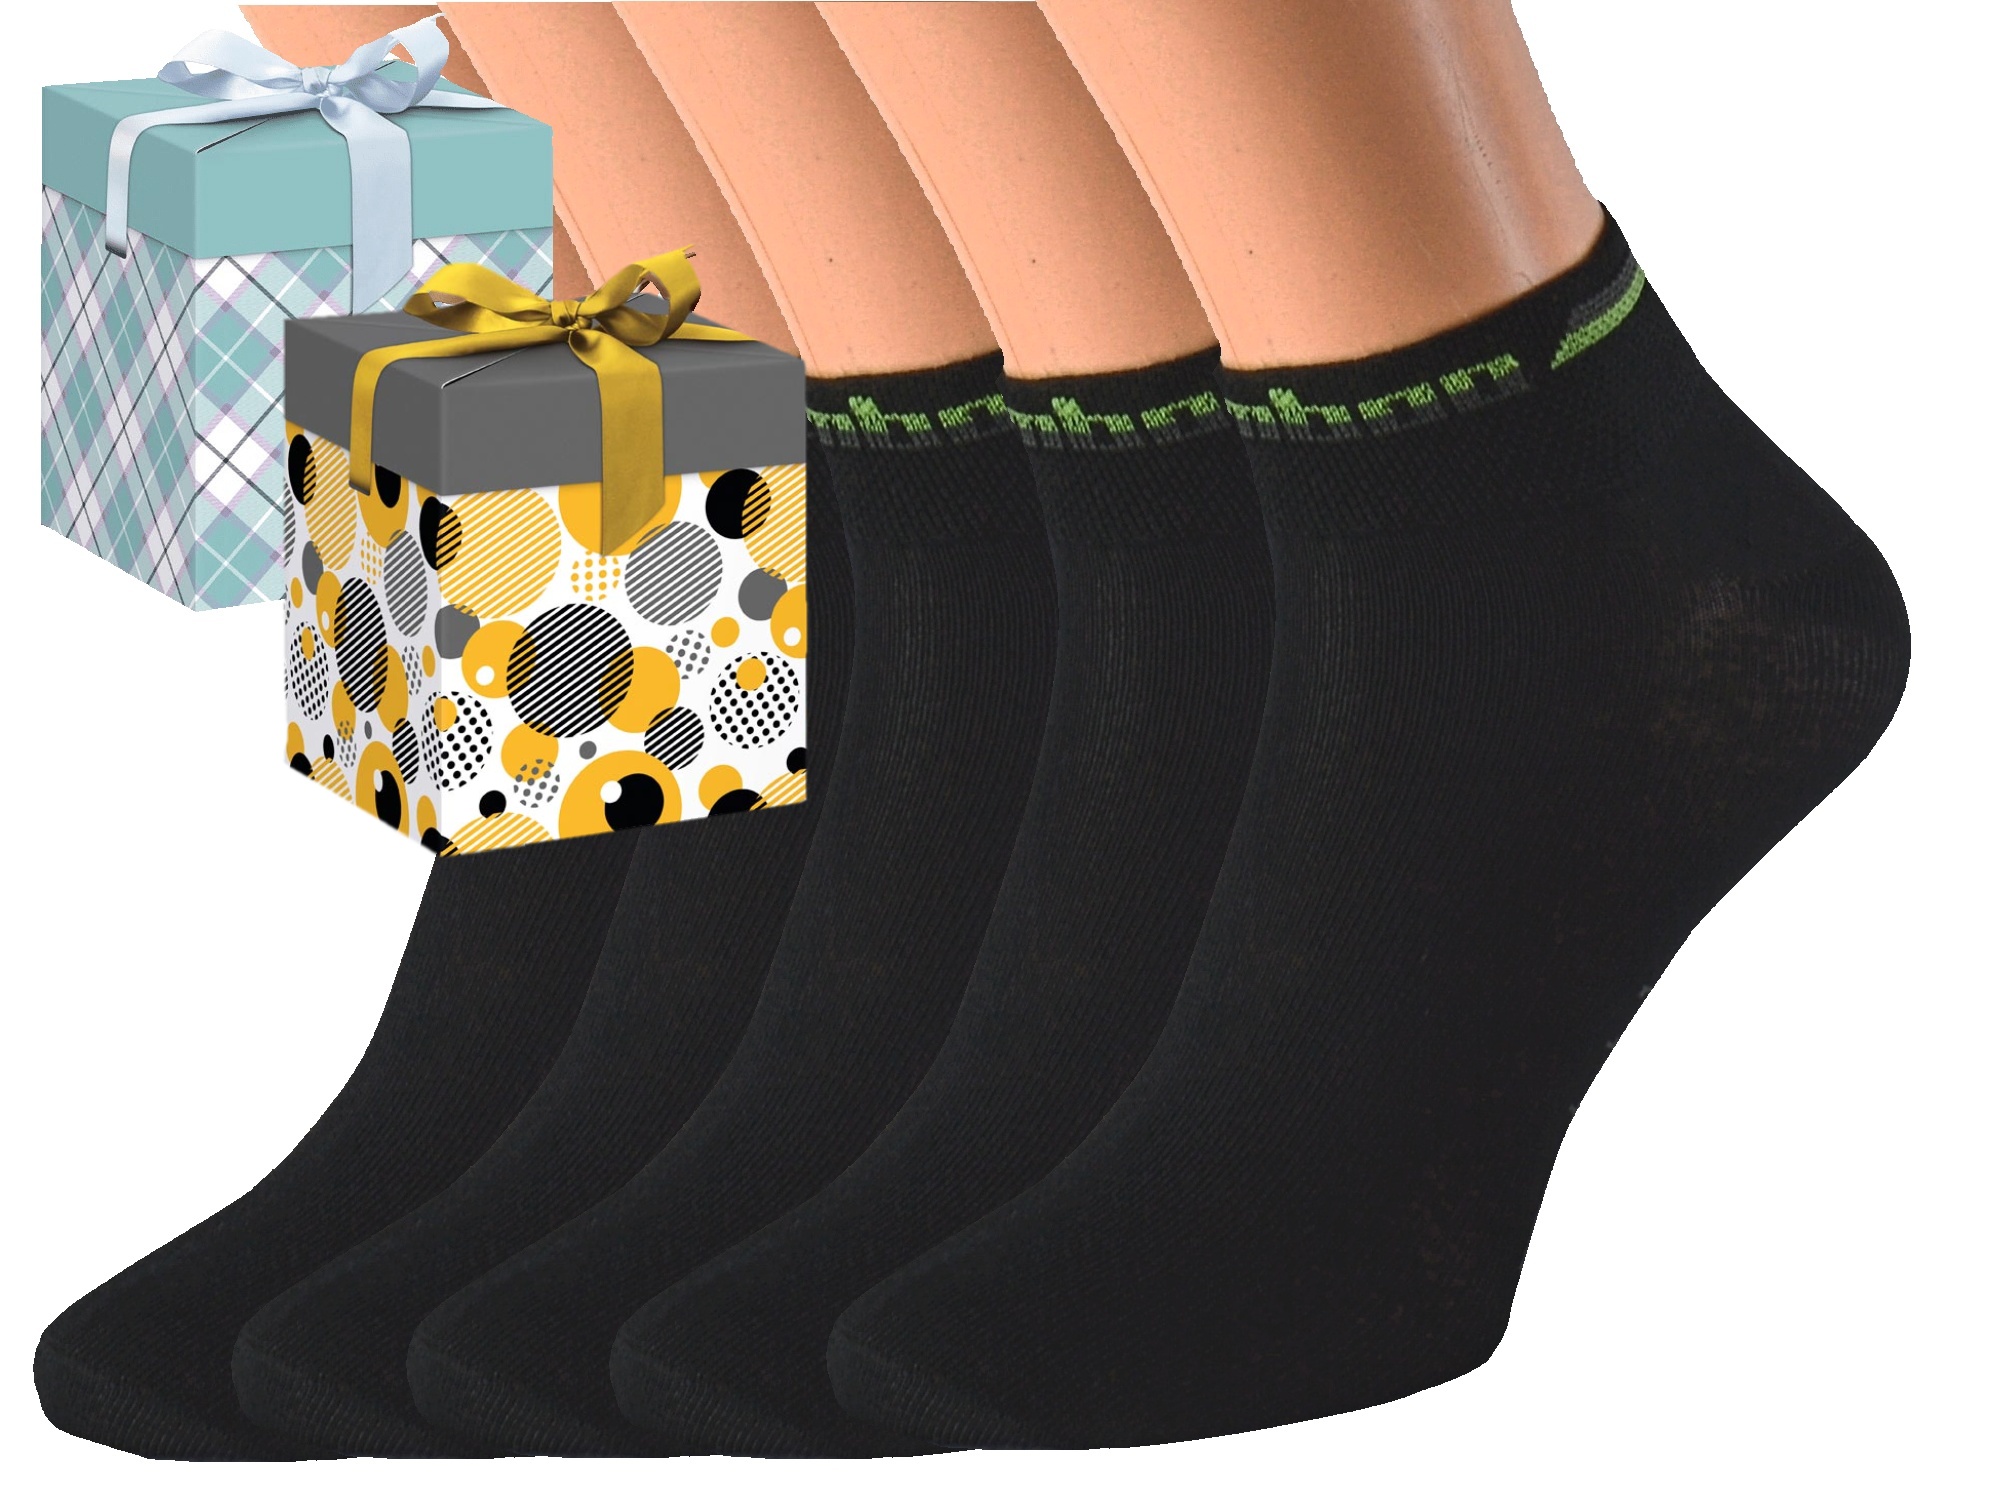 Dárkové balení 5 párů bambusových ponožek BAMB Barva: Černé, Velikost: EUR 39-42 (UK 6-8), Zvolte variantu dárkového balení: Modrá s oky